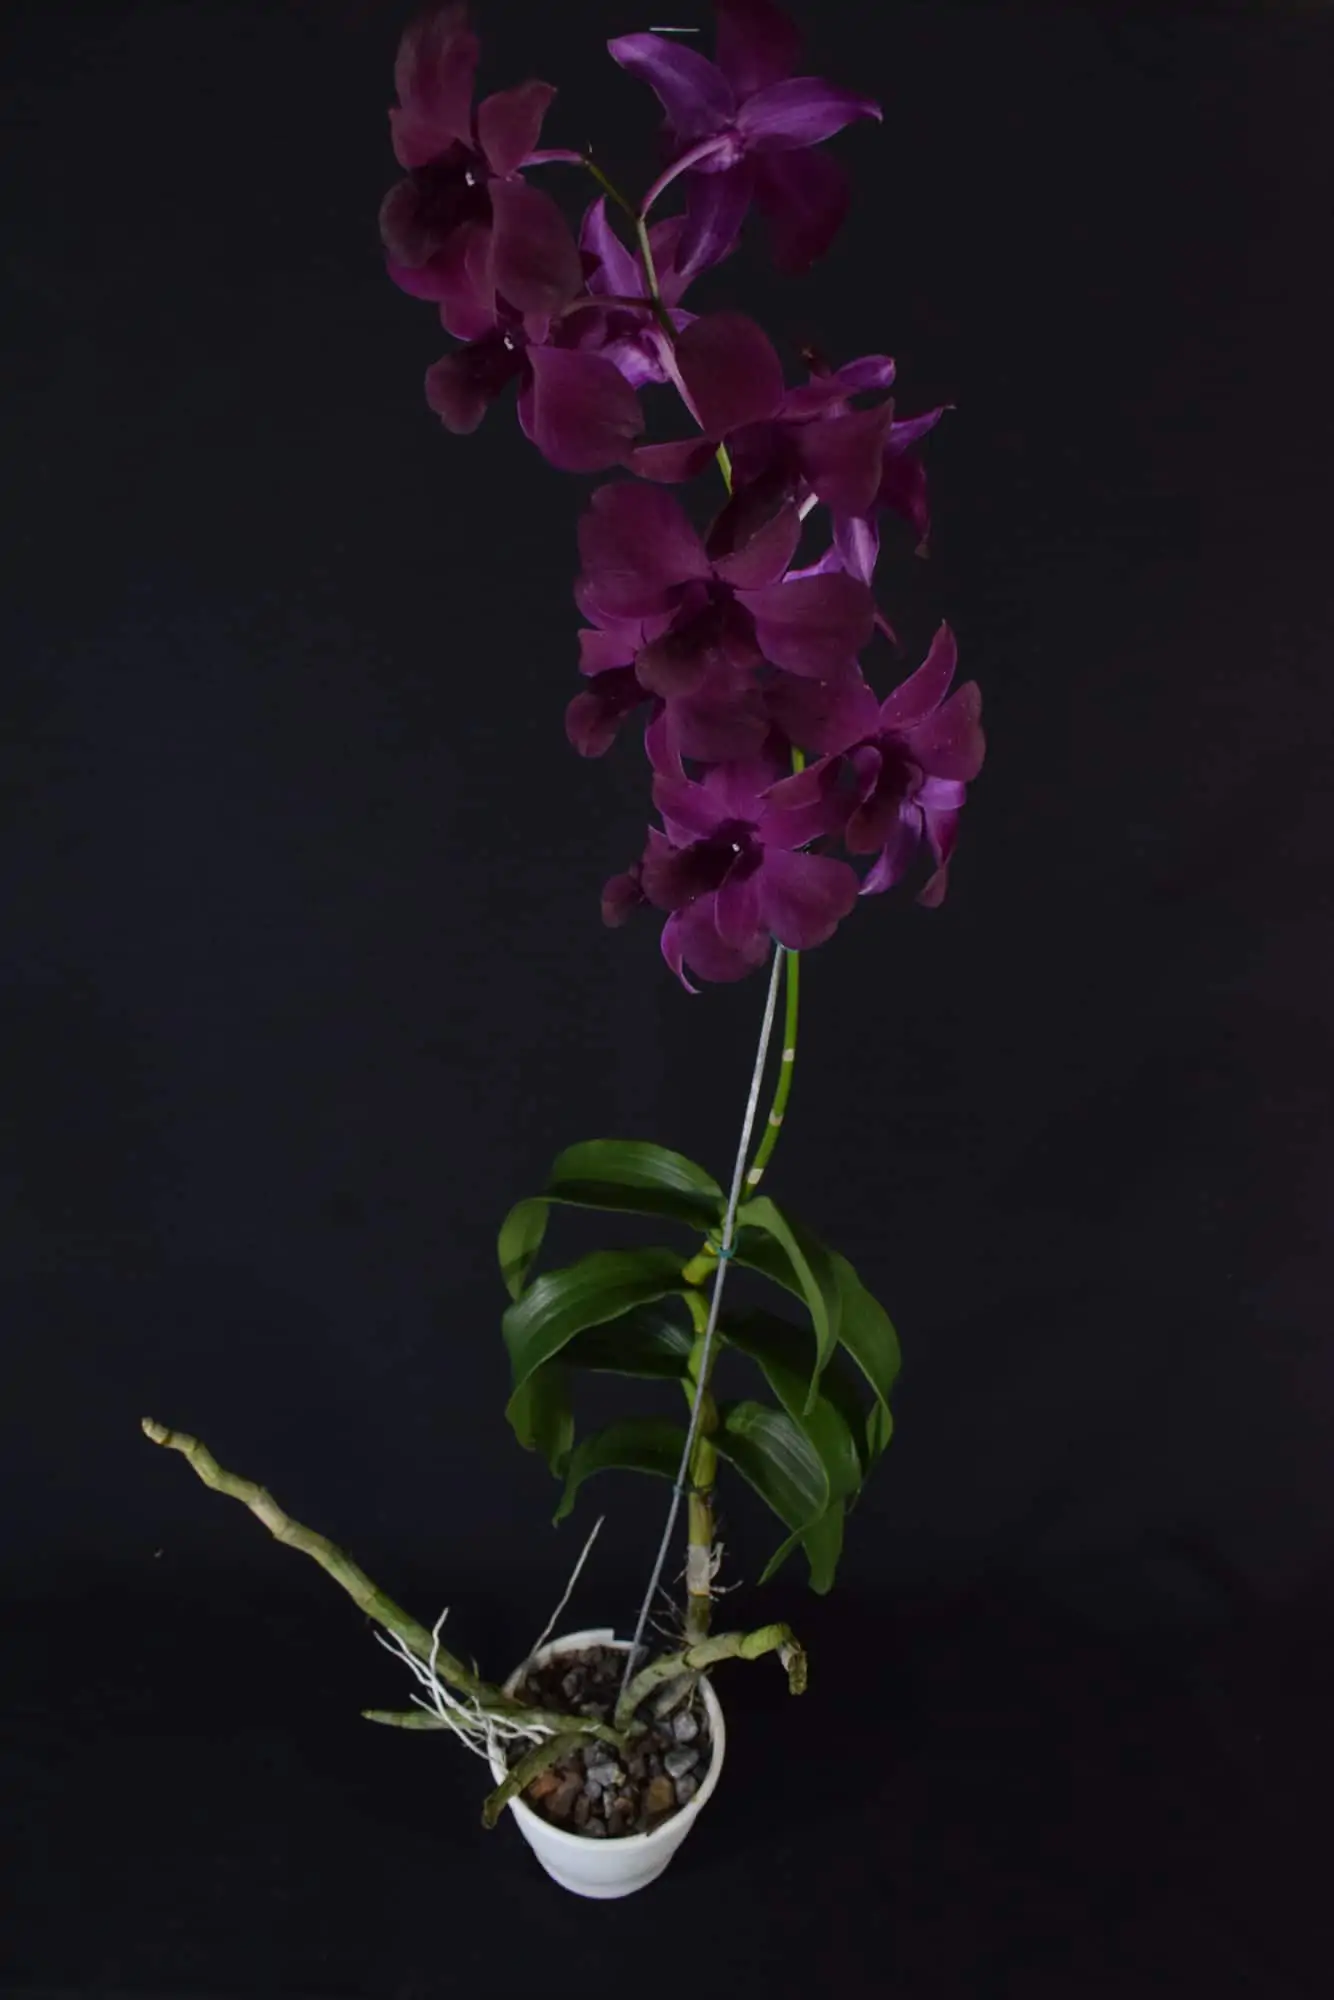 Denphal Lilás Escuro com Flor Grande - Orquidário Bahia